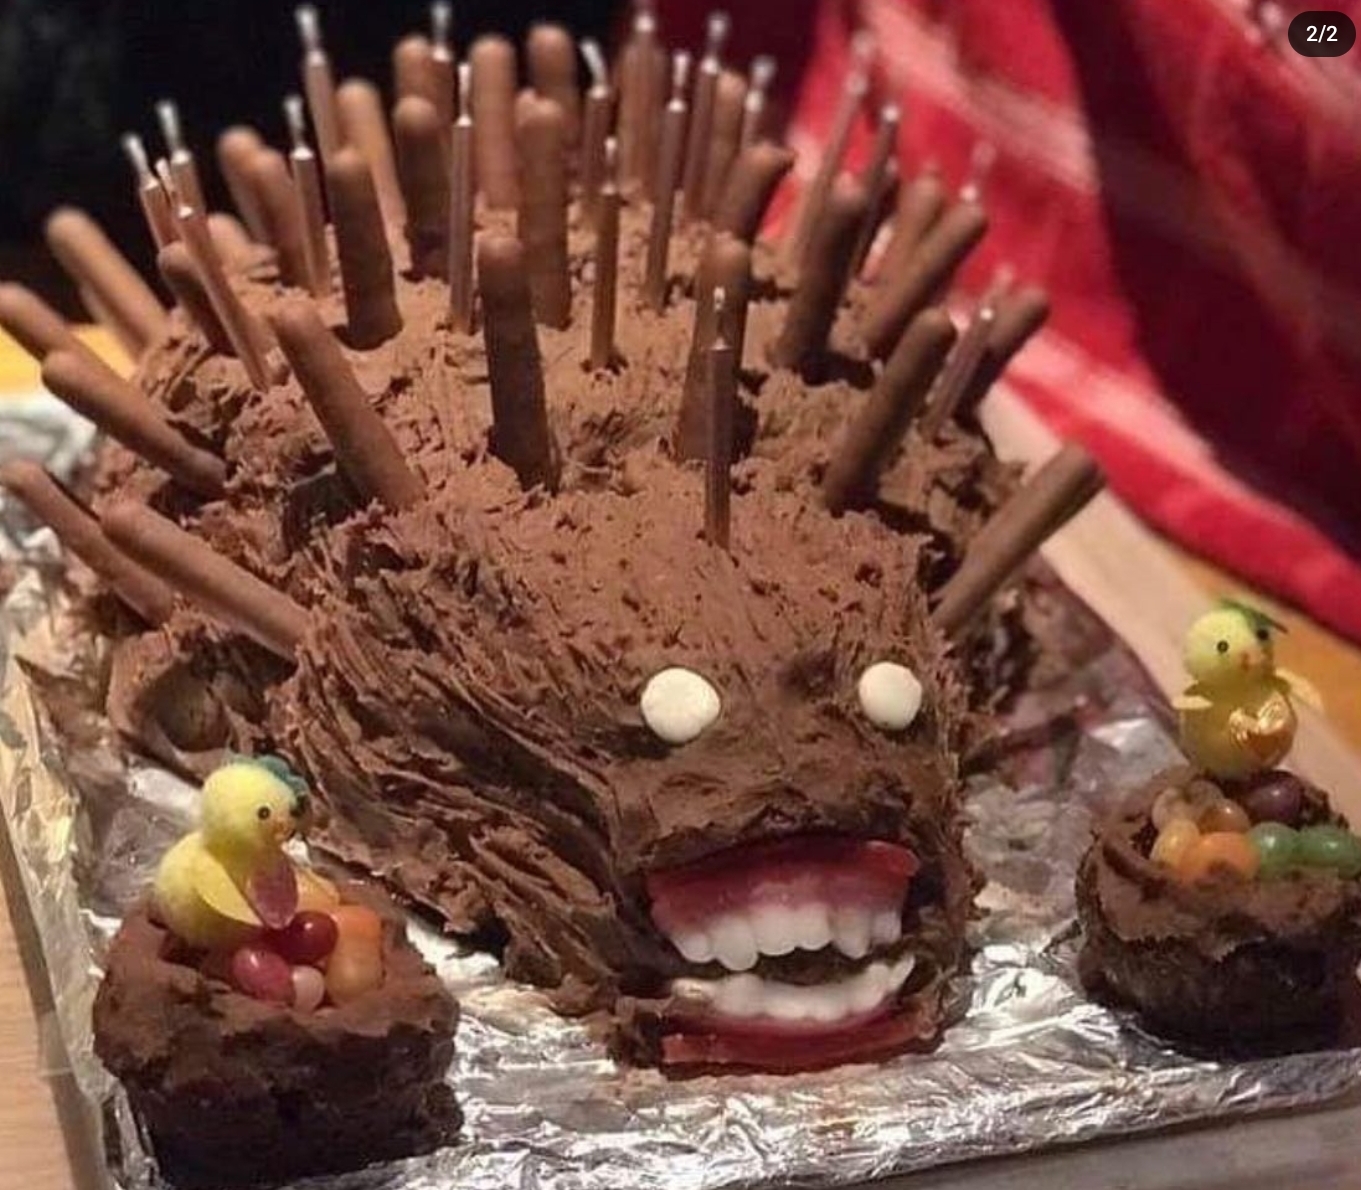 This cake defies description